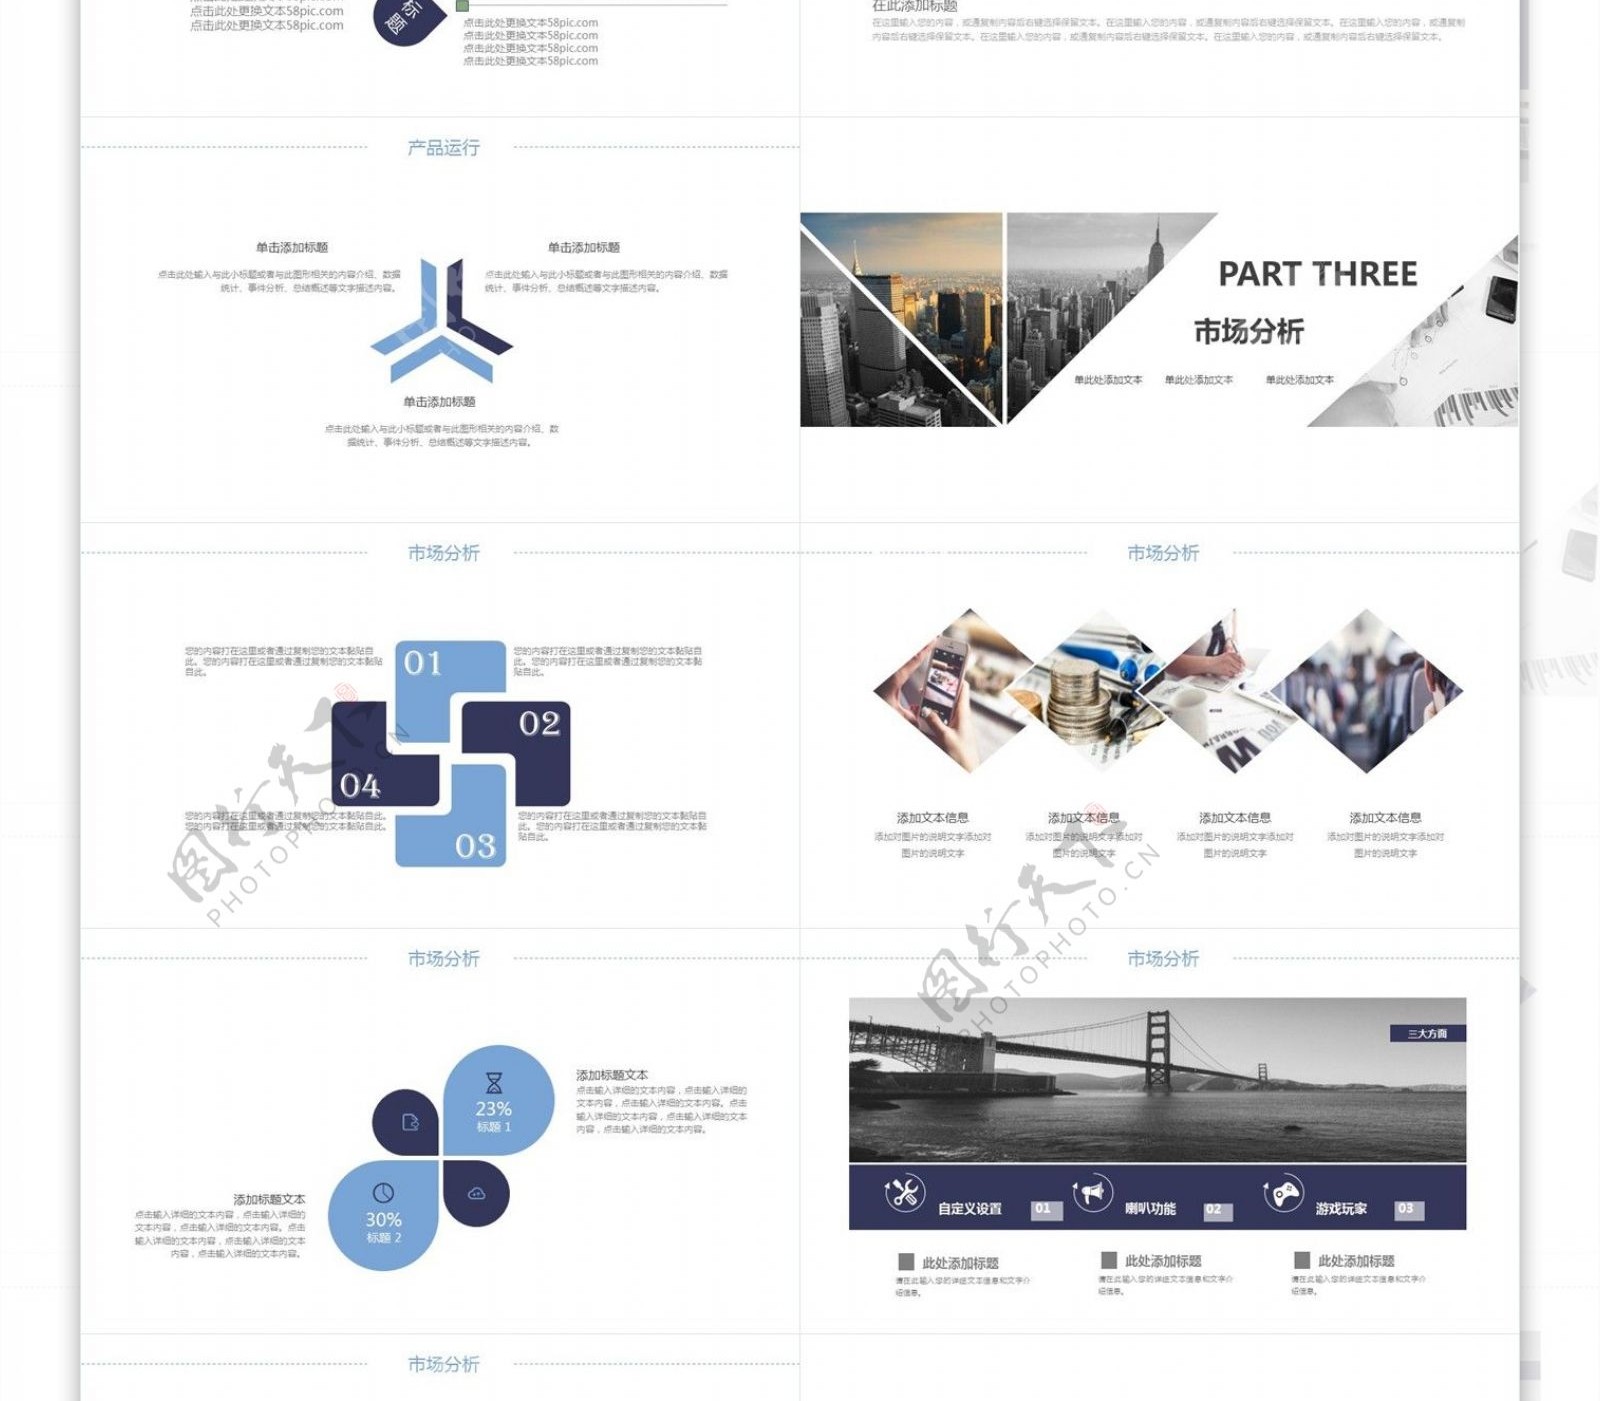 商业项目计划书企业宣传介绍PPT模板